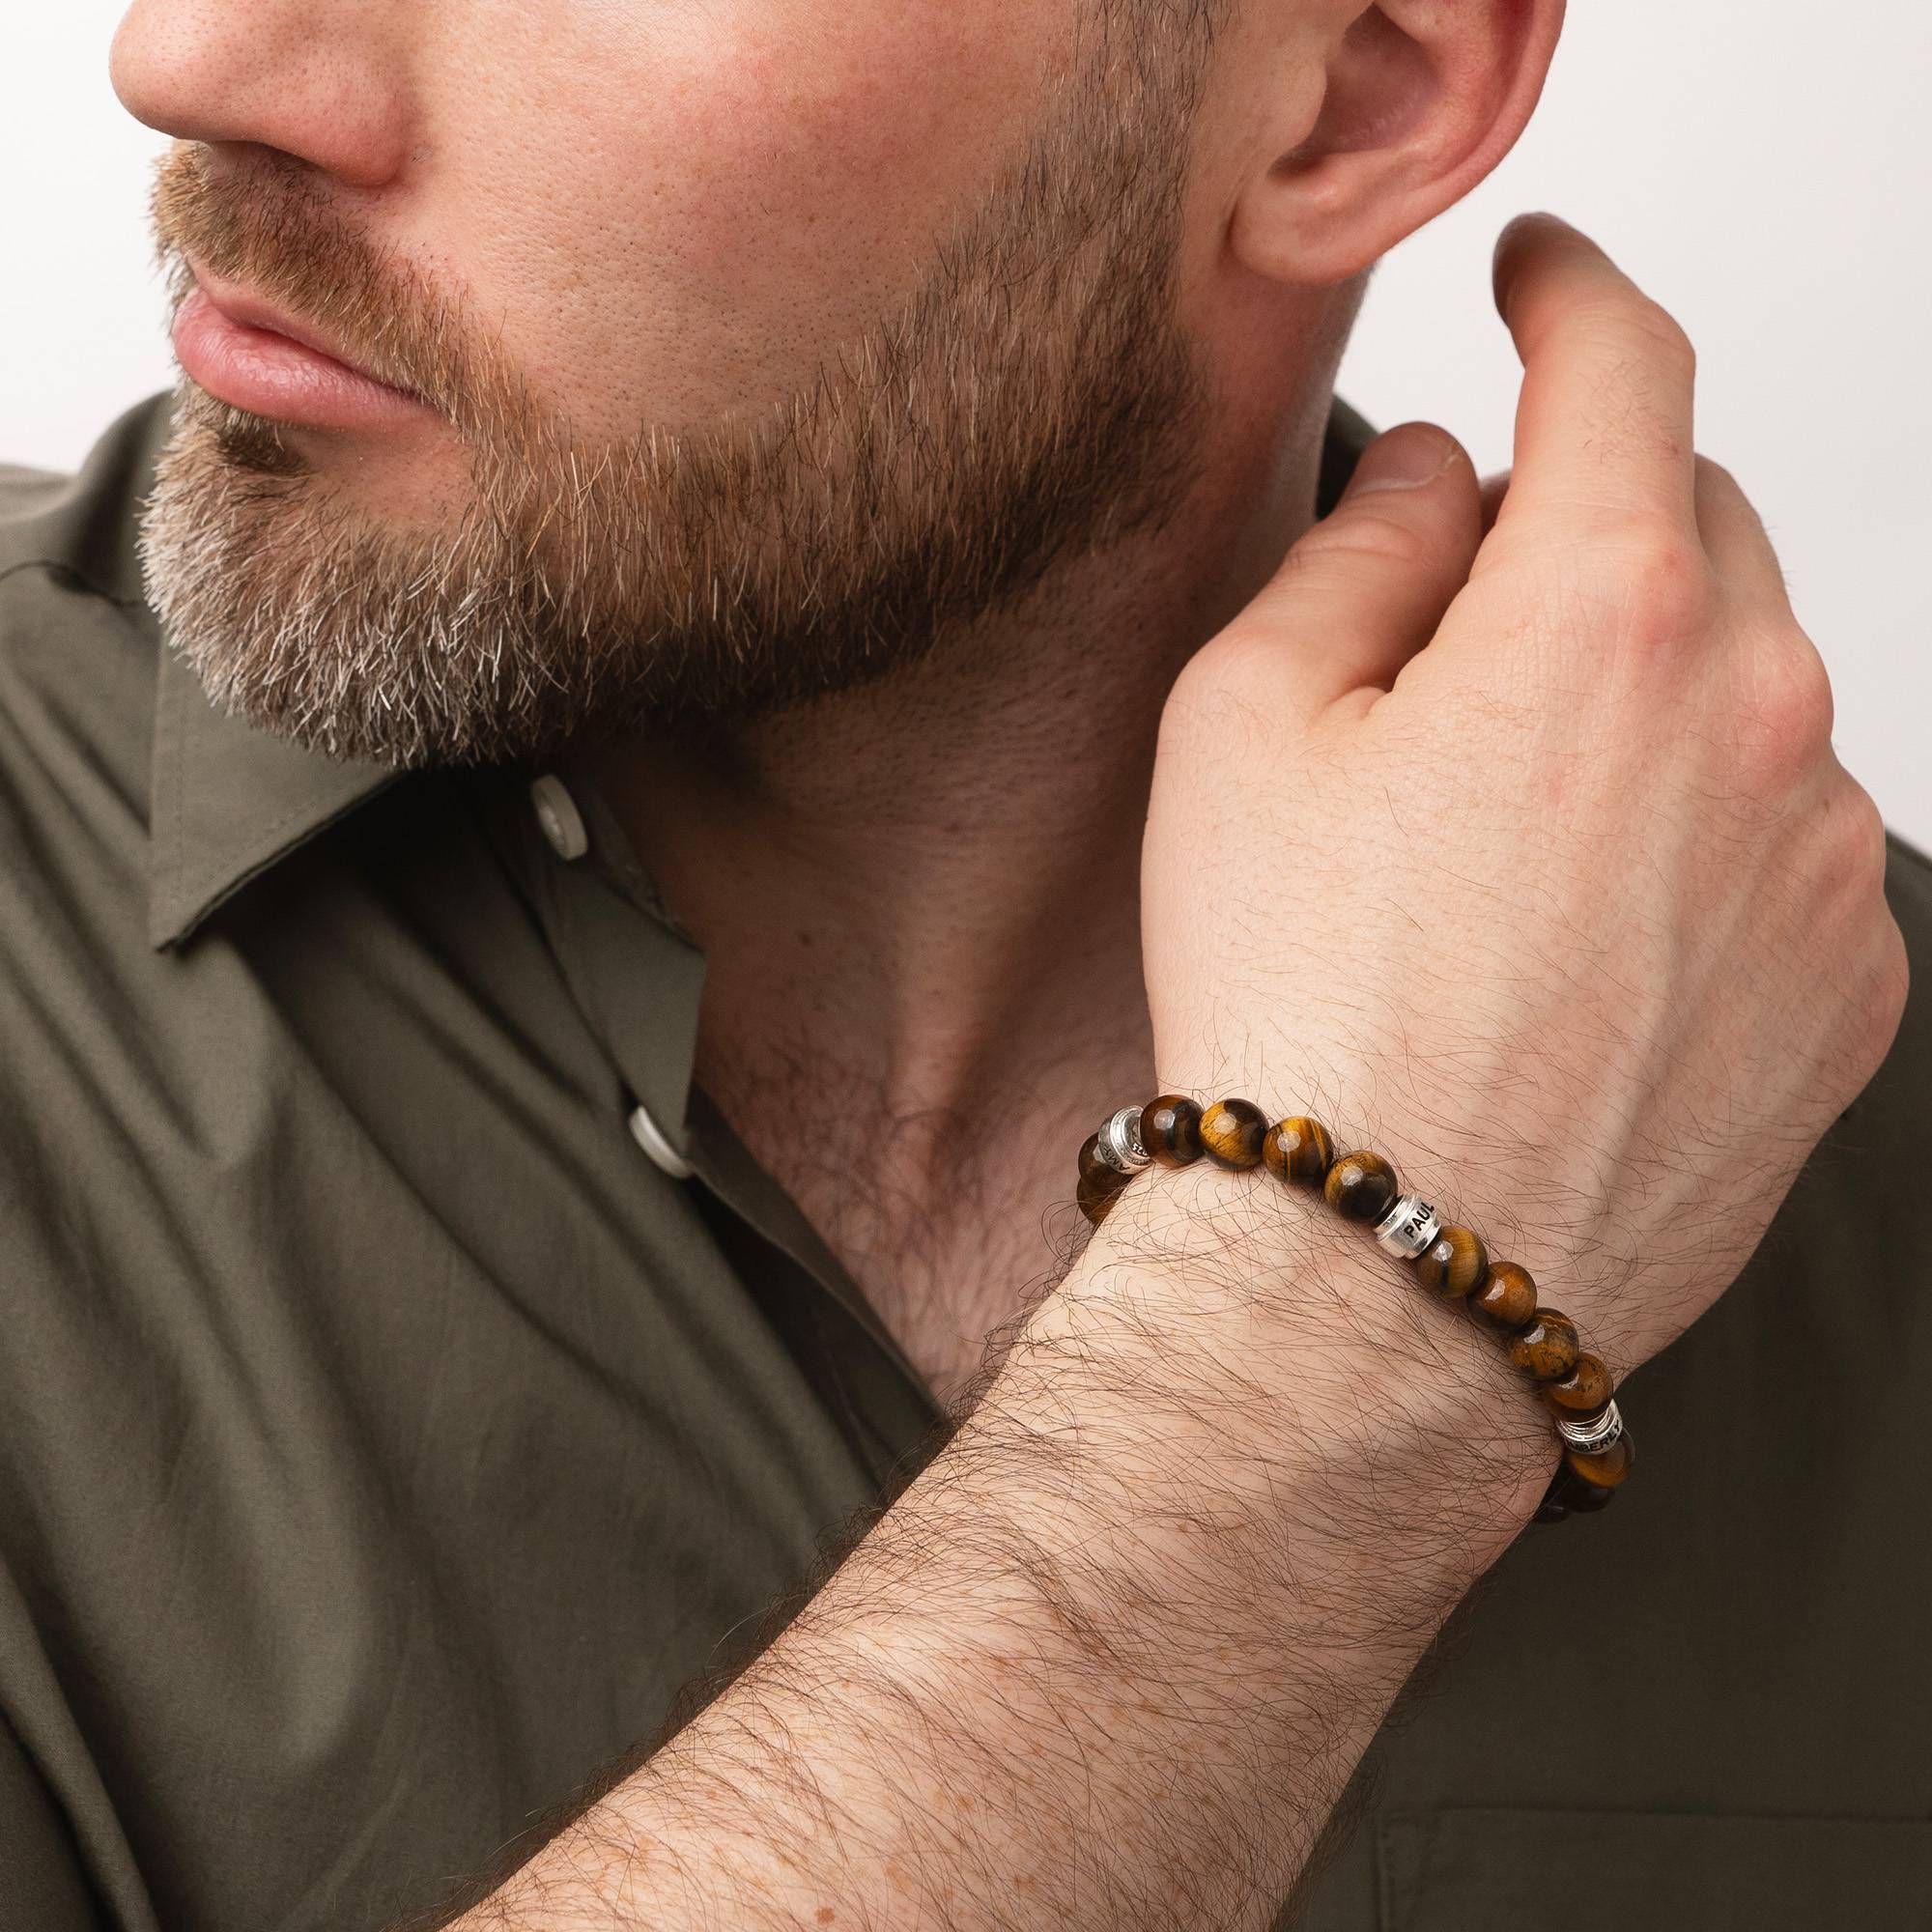 Leo personalisiertes Tiegerauge Herrenarmband mit silbernen Beads-3 Produktfoto